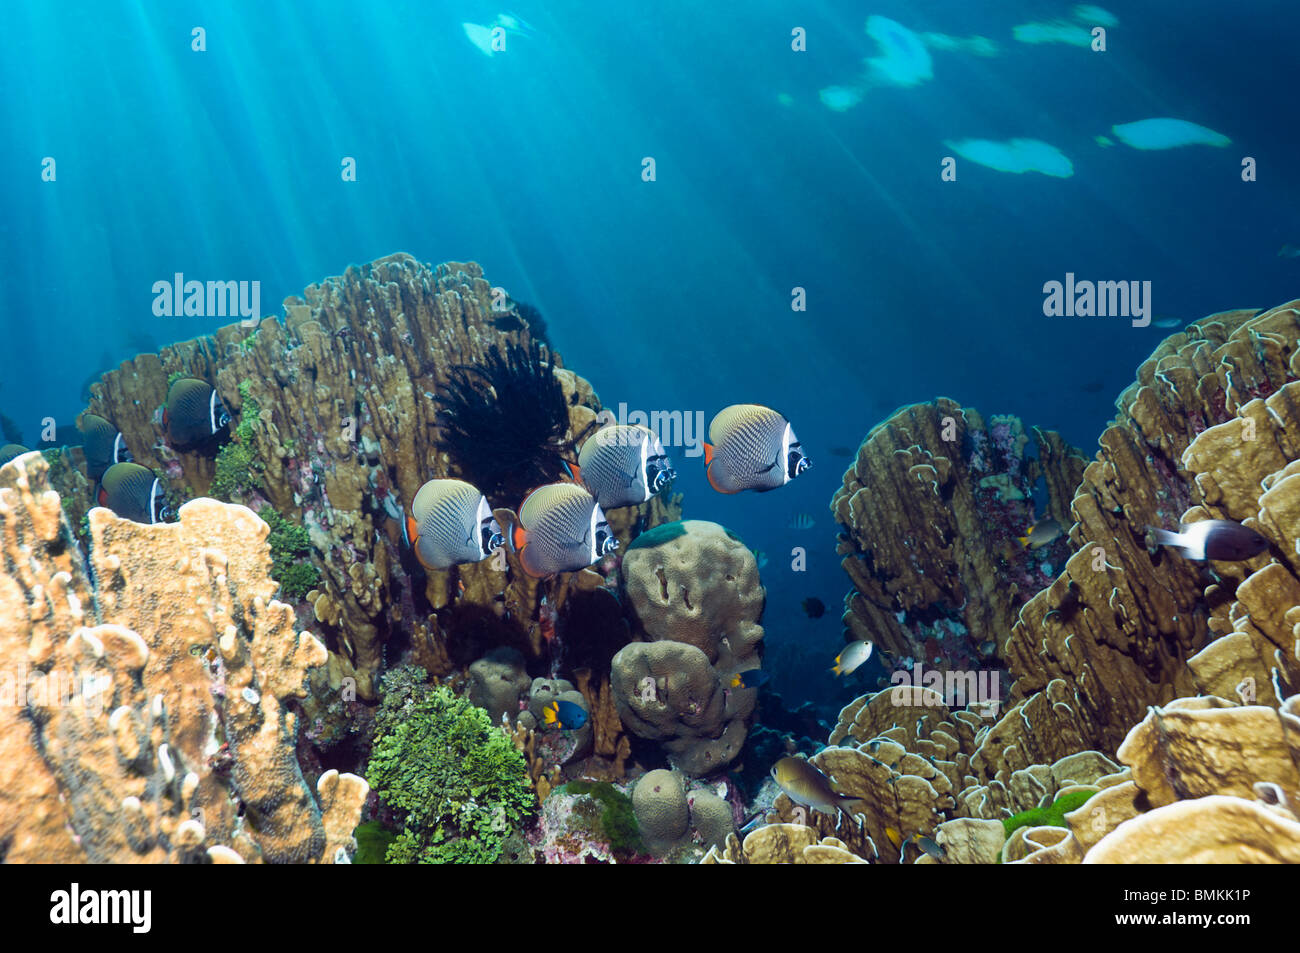 Redtail o Collared butterflyfish nadar a lo largo de coral azul, que es un fósil viviente. Mar de Andamán, Tailandia. Foto de stock